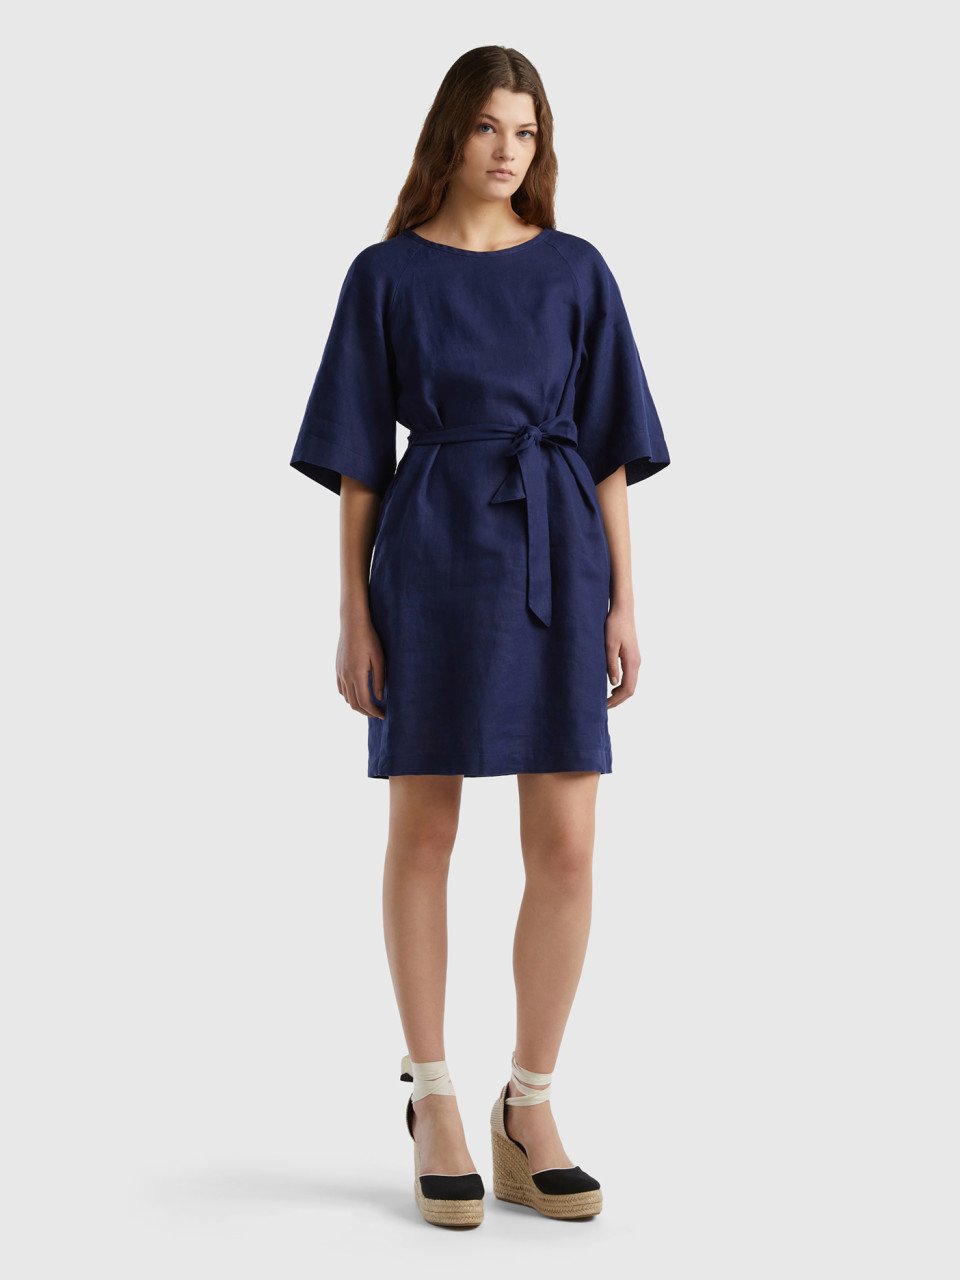 Benetton, Short Dress In Pure Linen, Dark Blue, Women